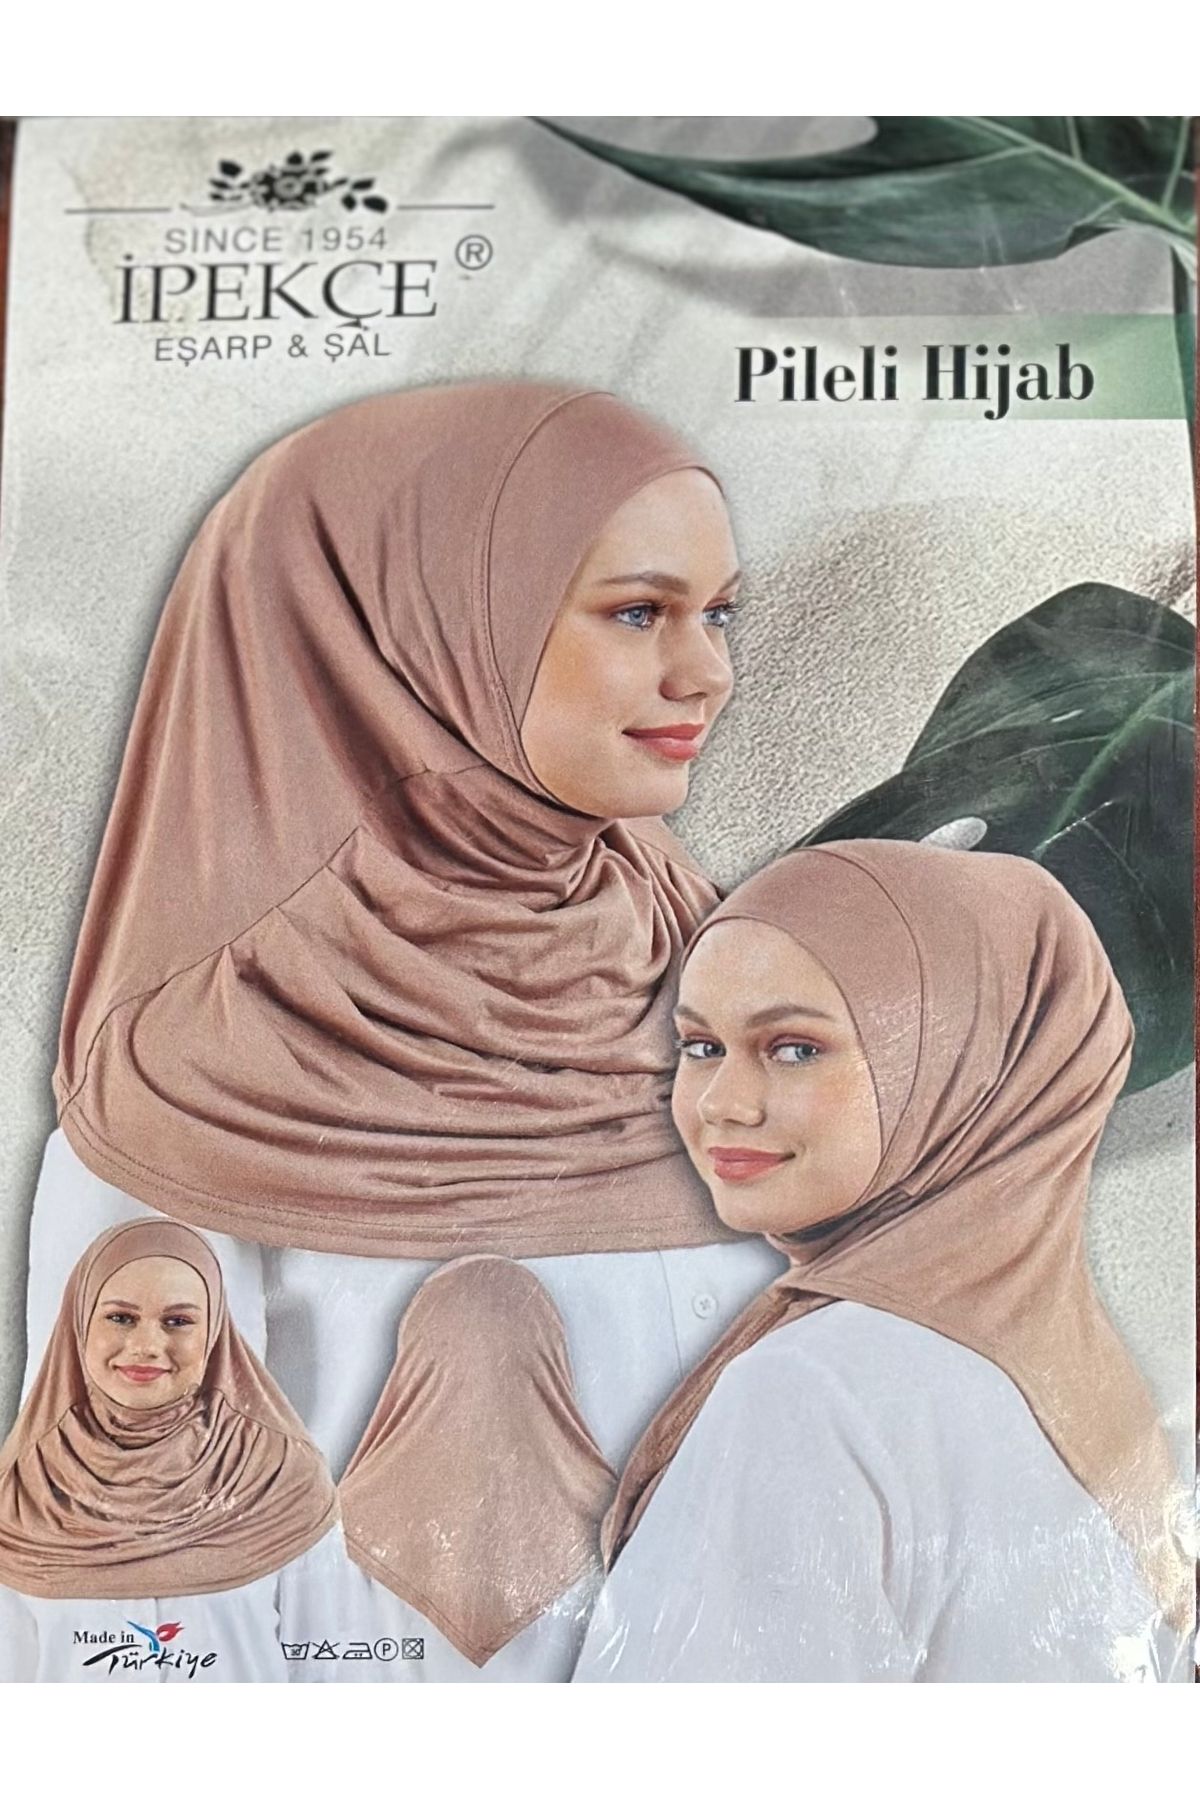 İpekçe Home Piliseli Hijab Hazır Çocuk Eşarbı Kız Çocuk Pratik Baş Örtü